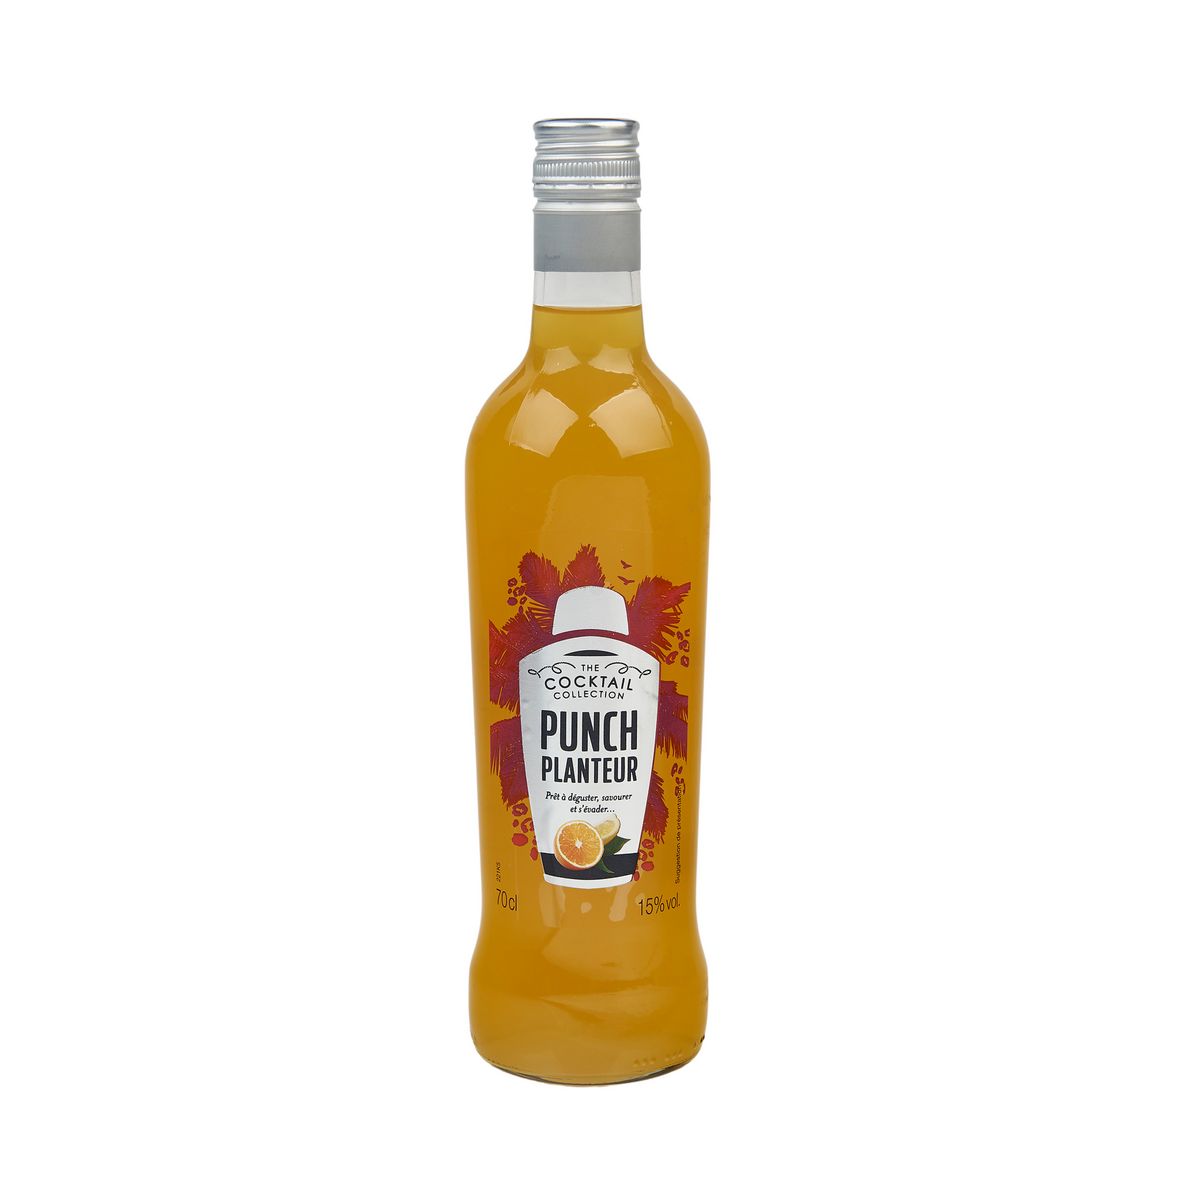 AUCHAN Punch planteur orange Cocktail collection prêt à déguster 15% 70cl